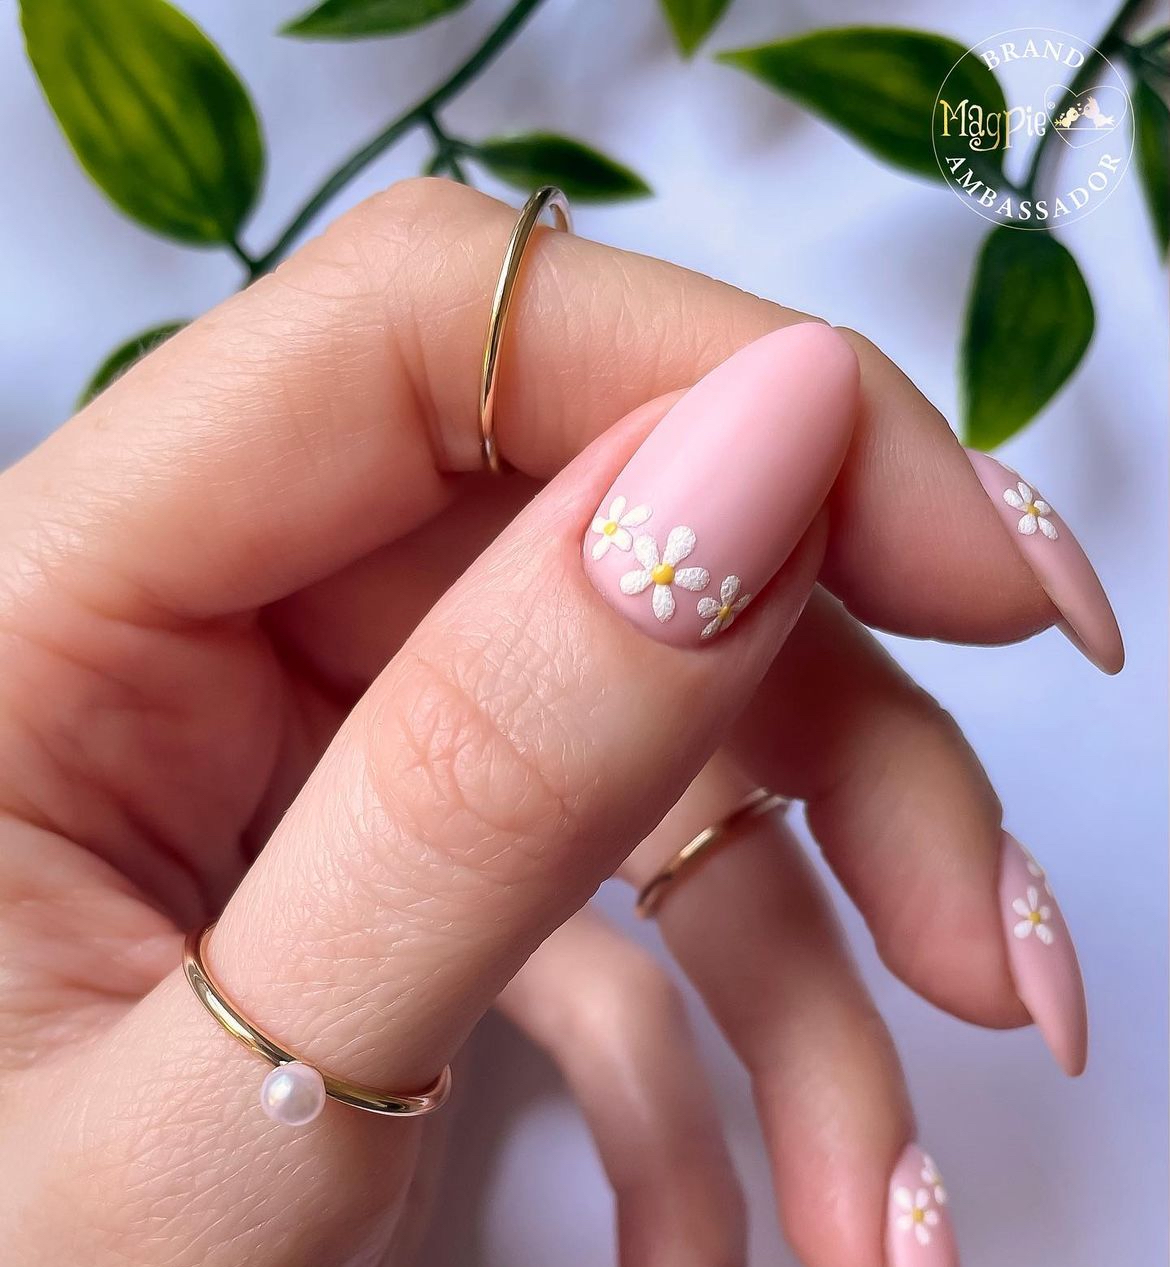 nails daisies